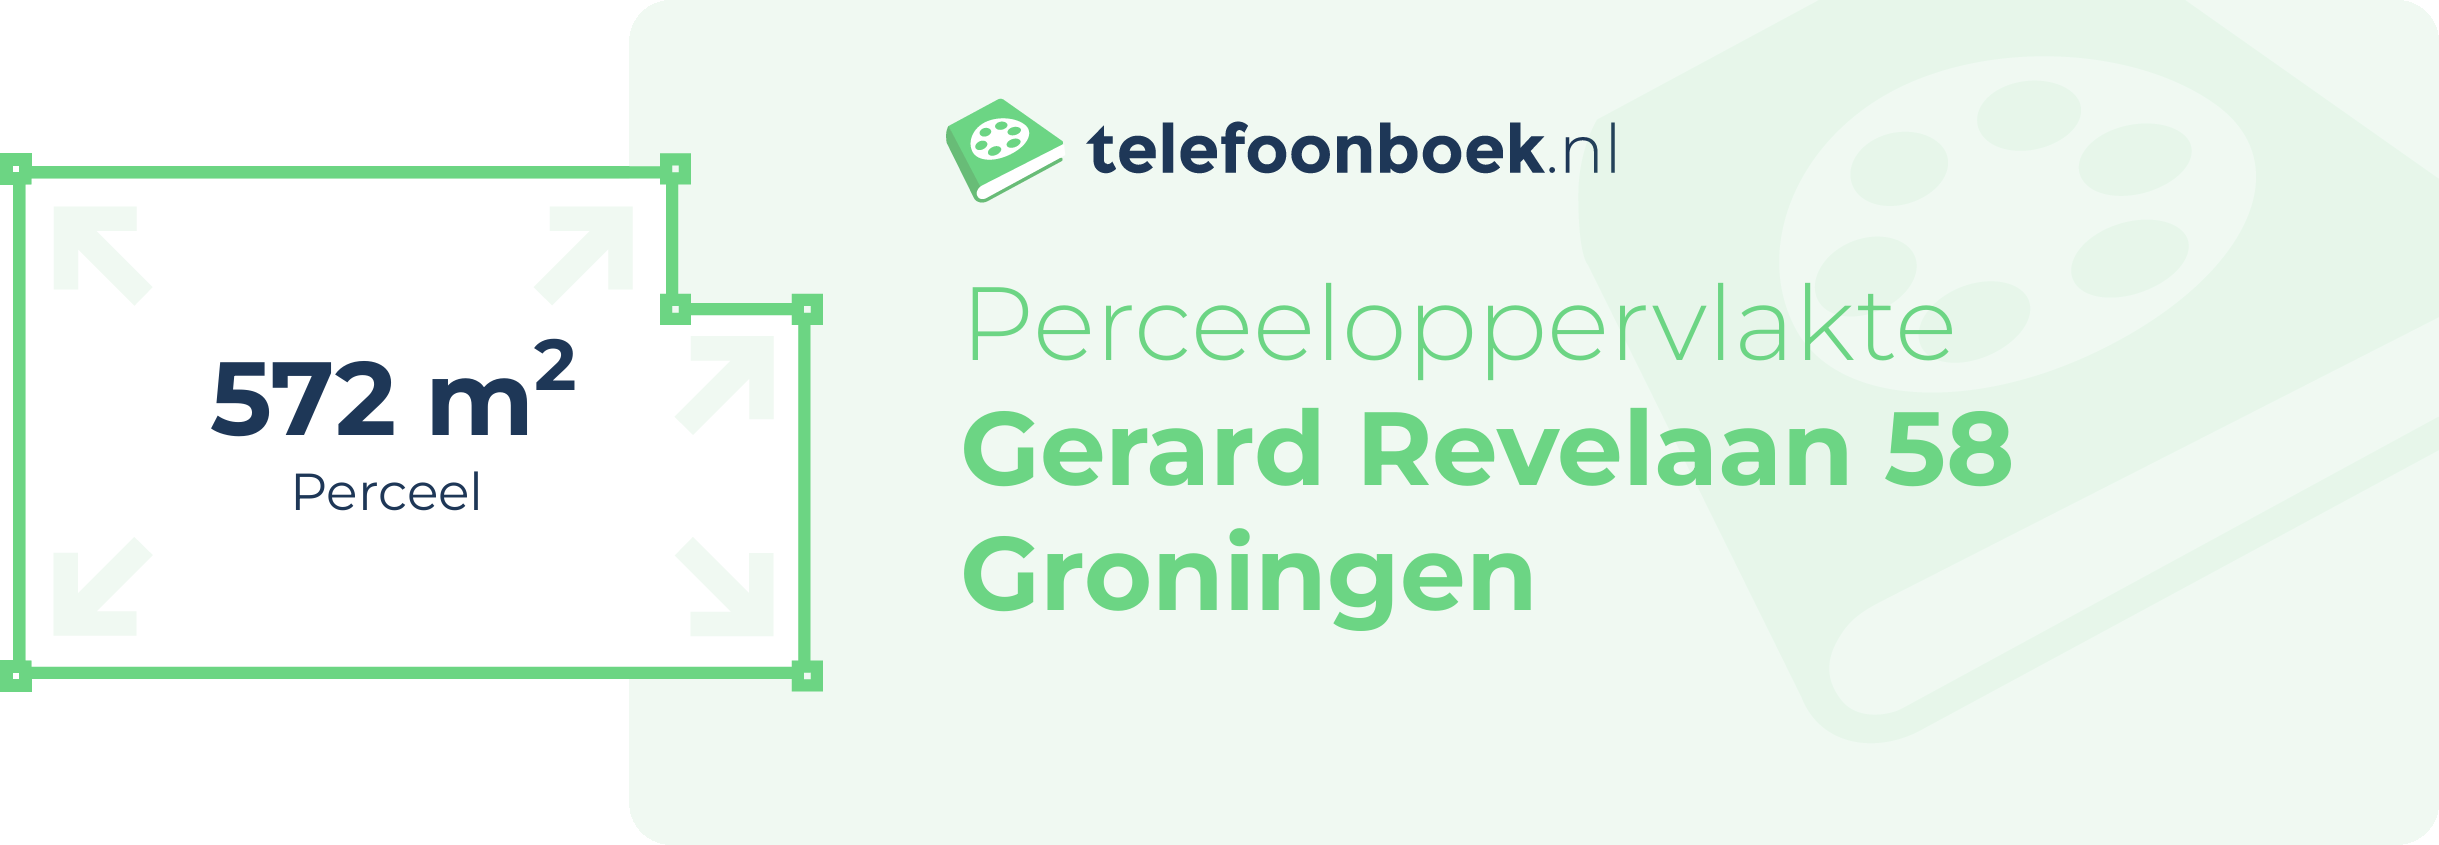 Perceeloppervlakte Gerard Revelaan 58 Groningen